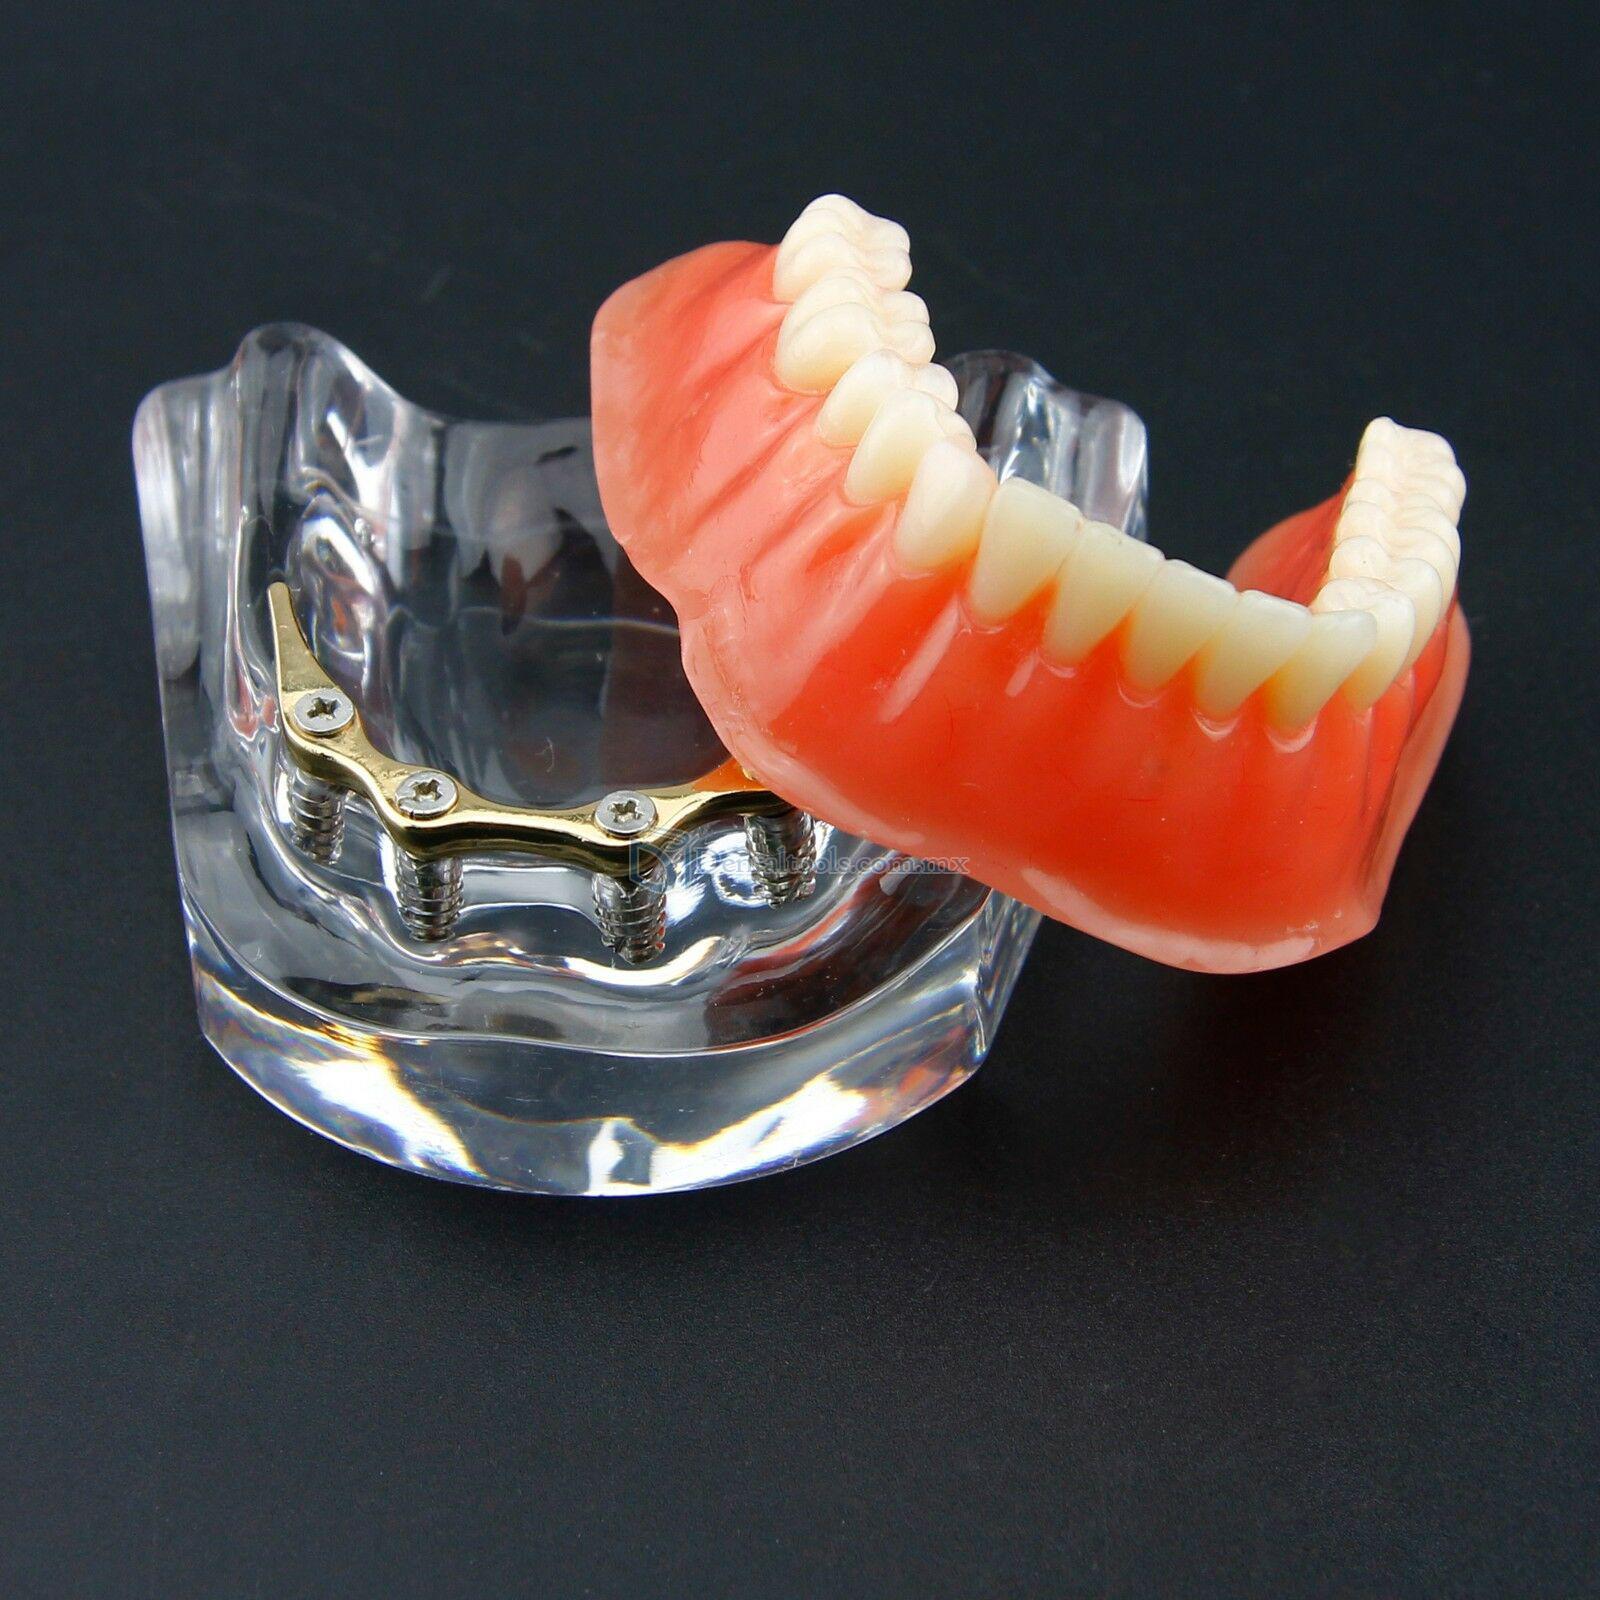 Dental Sobredentadura Typodont Modelo Inferior Precision Implant Dorado #6009